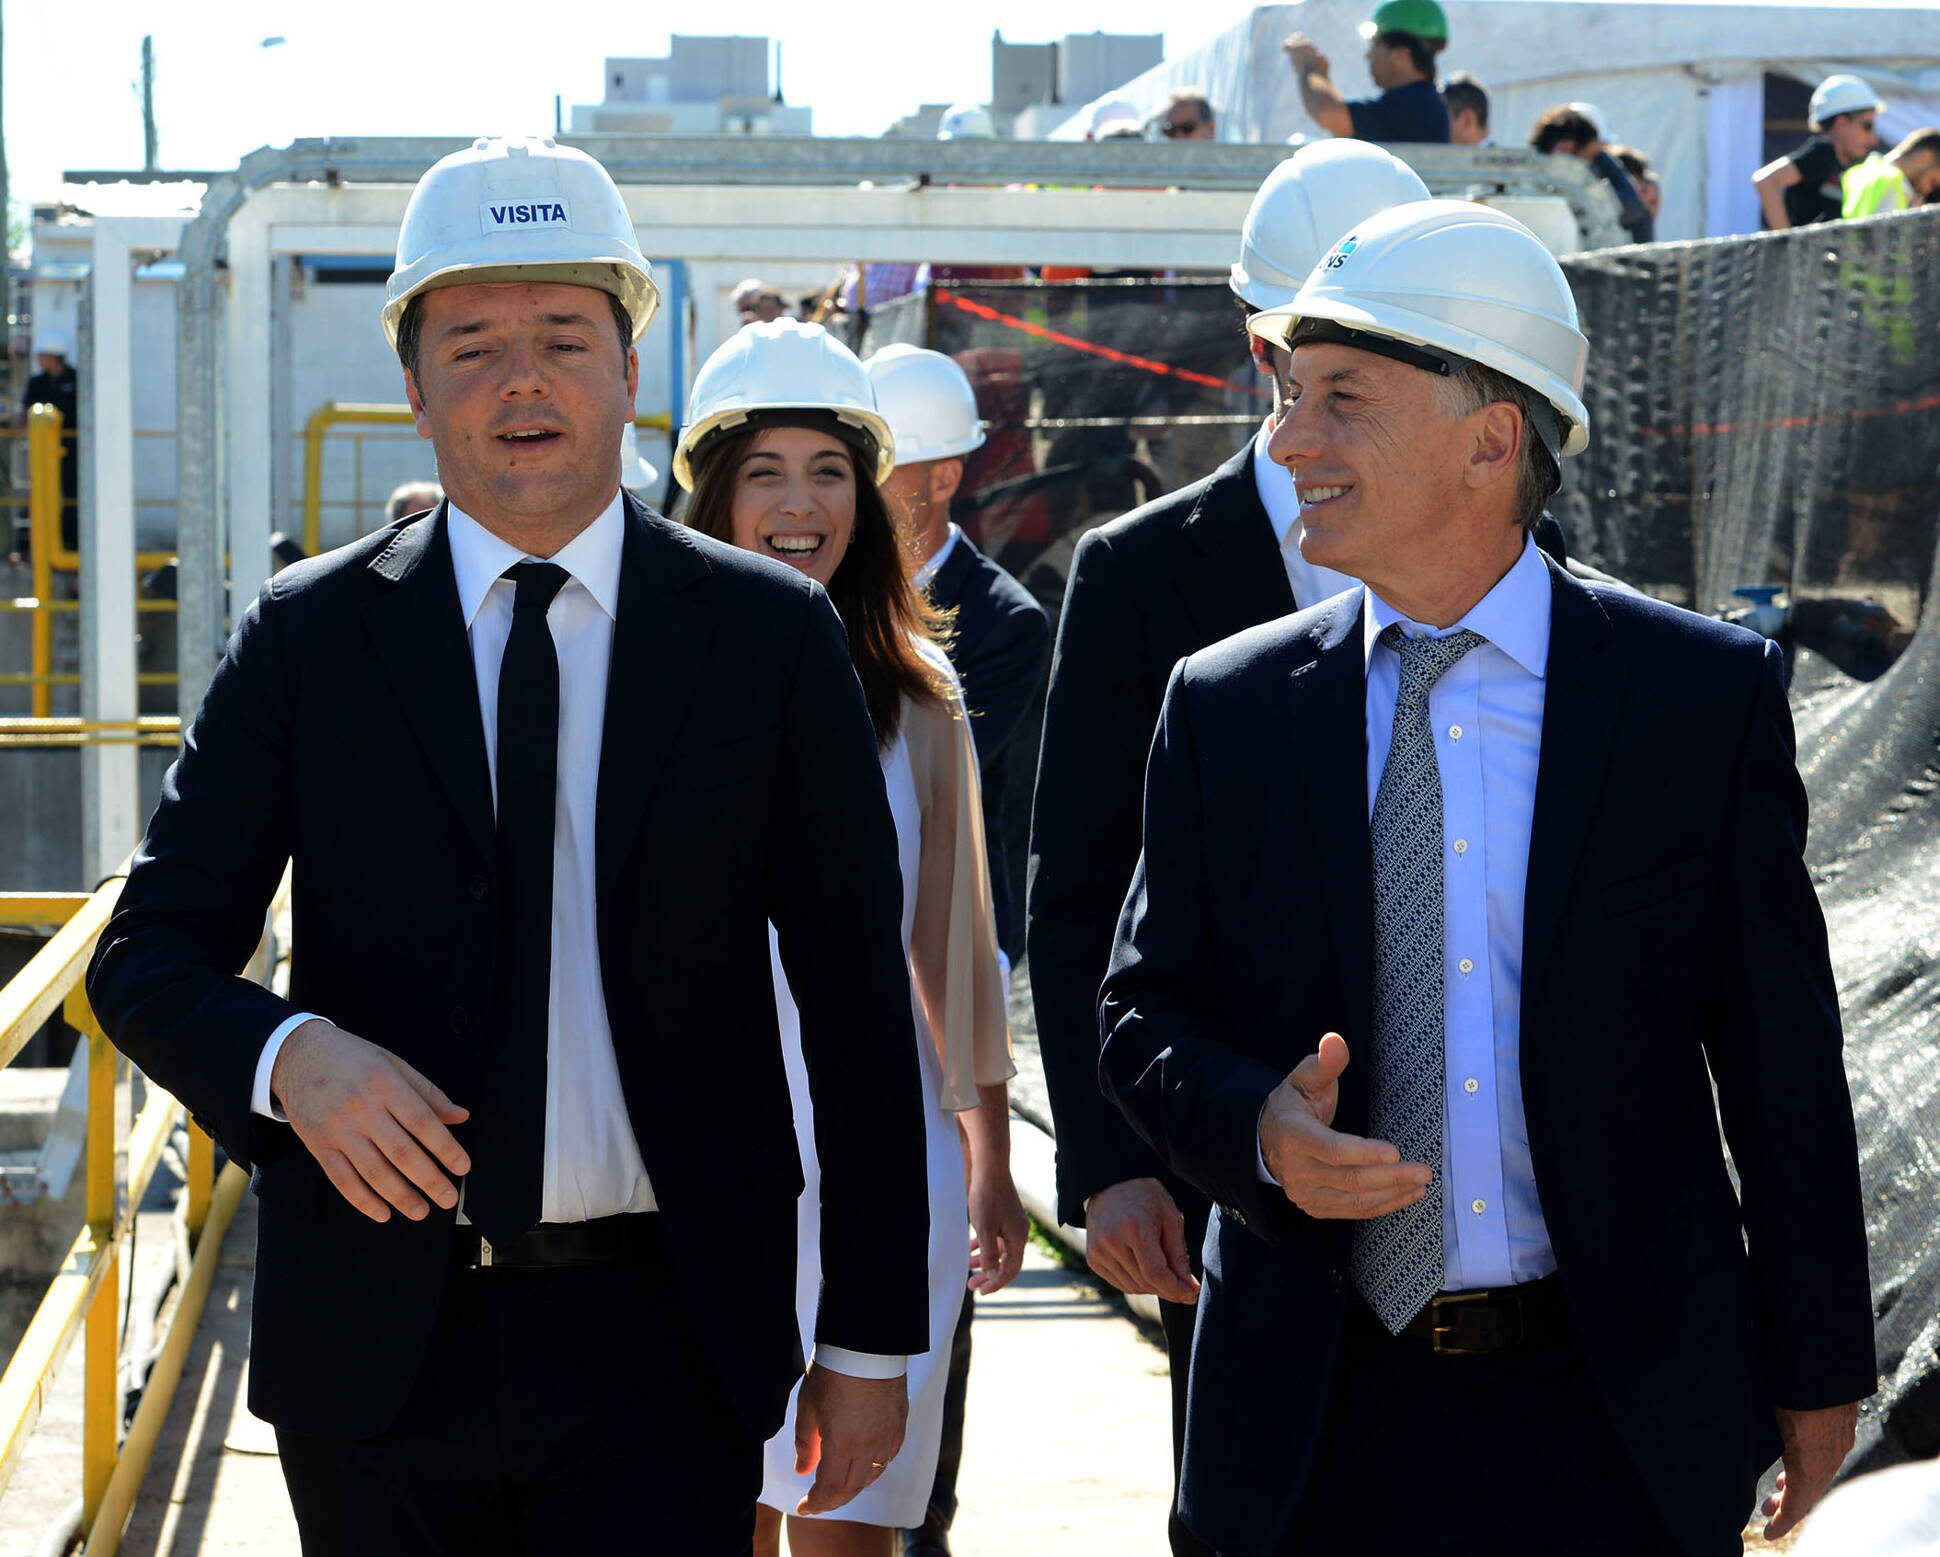 El Presidente y Matteo Renzi recorrieron el obrador del FFCC Sarmiento